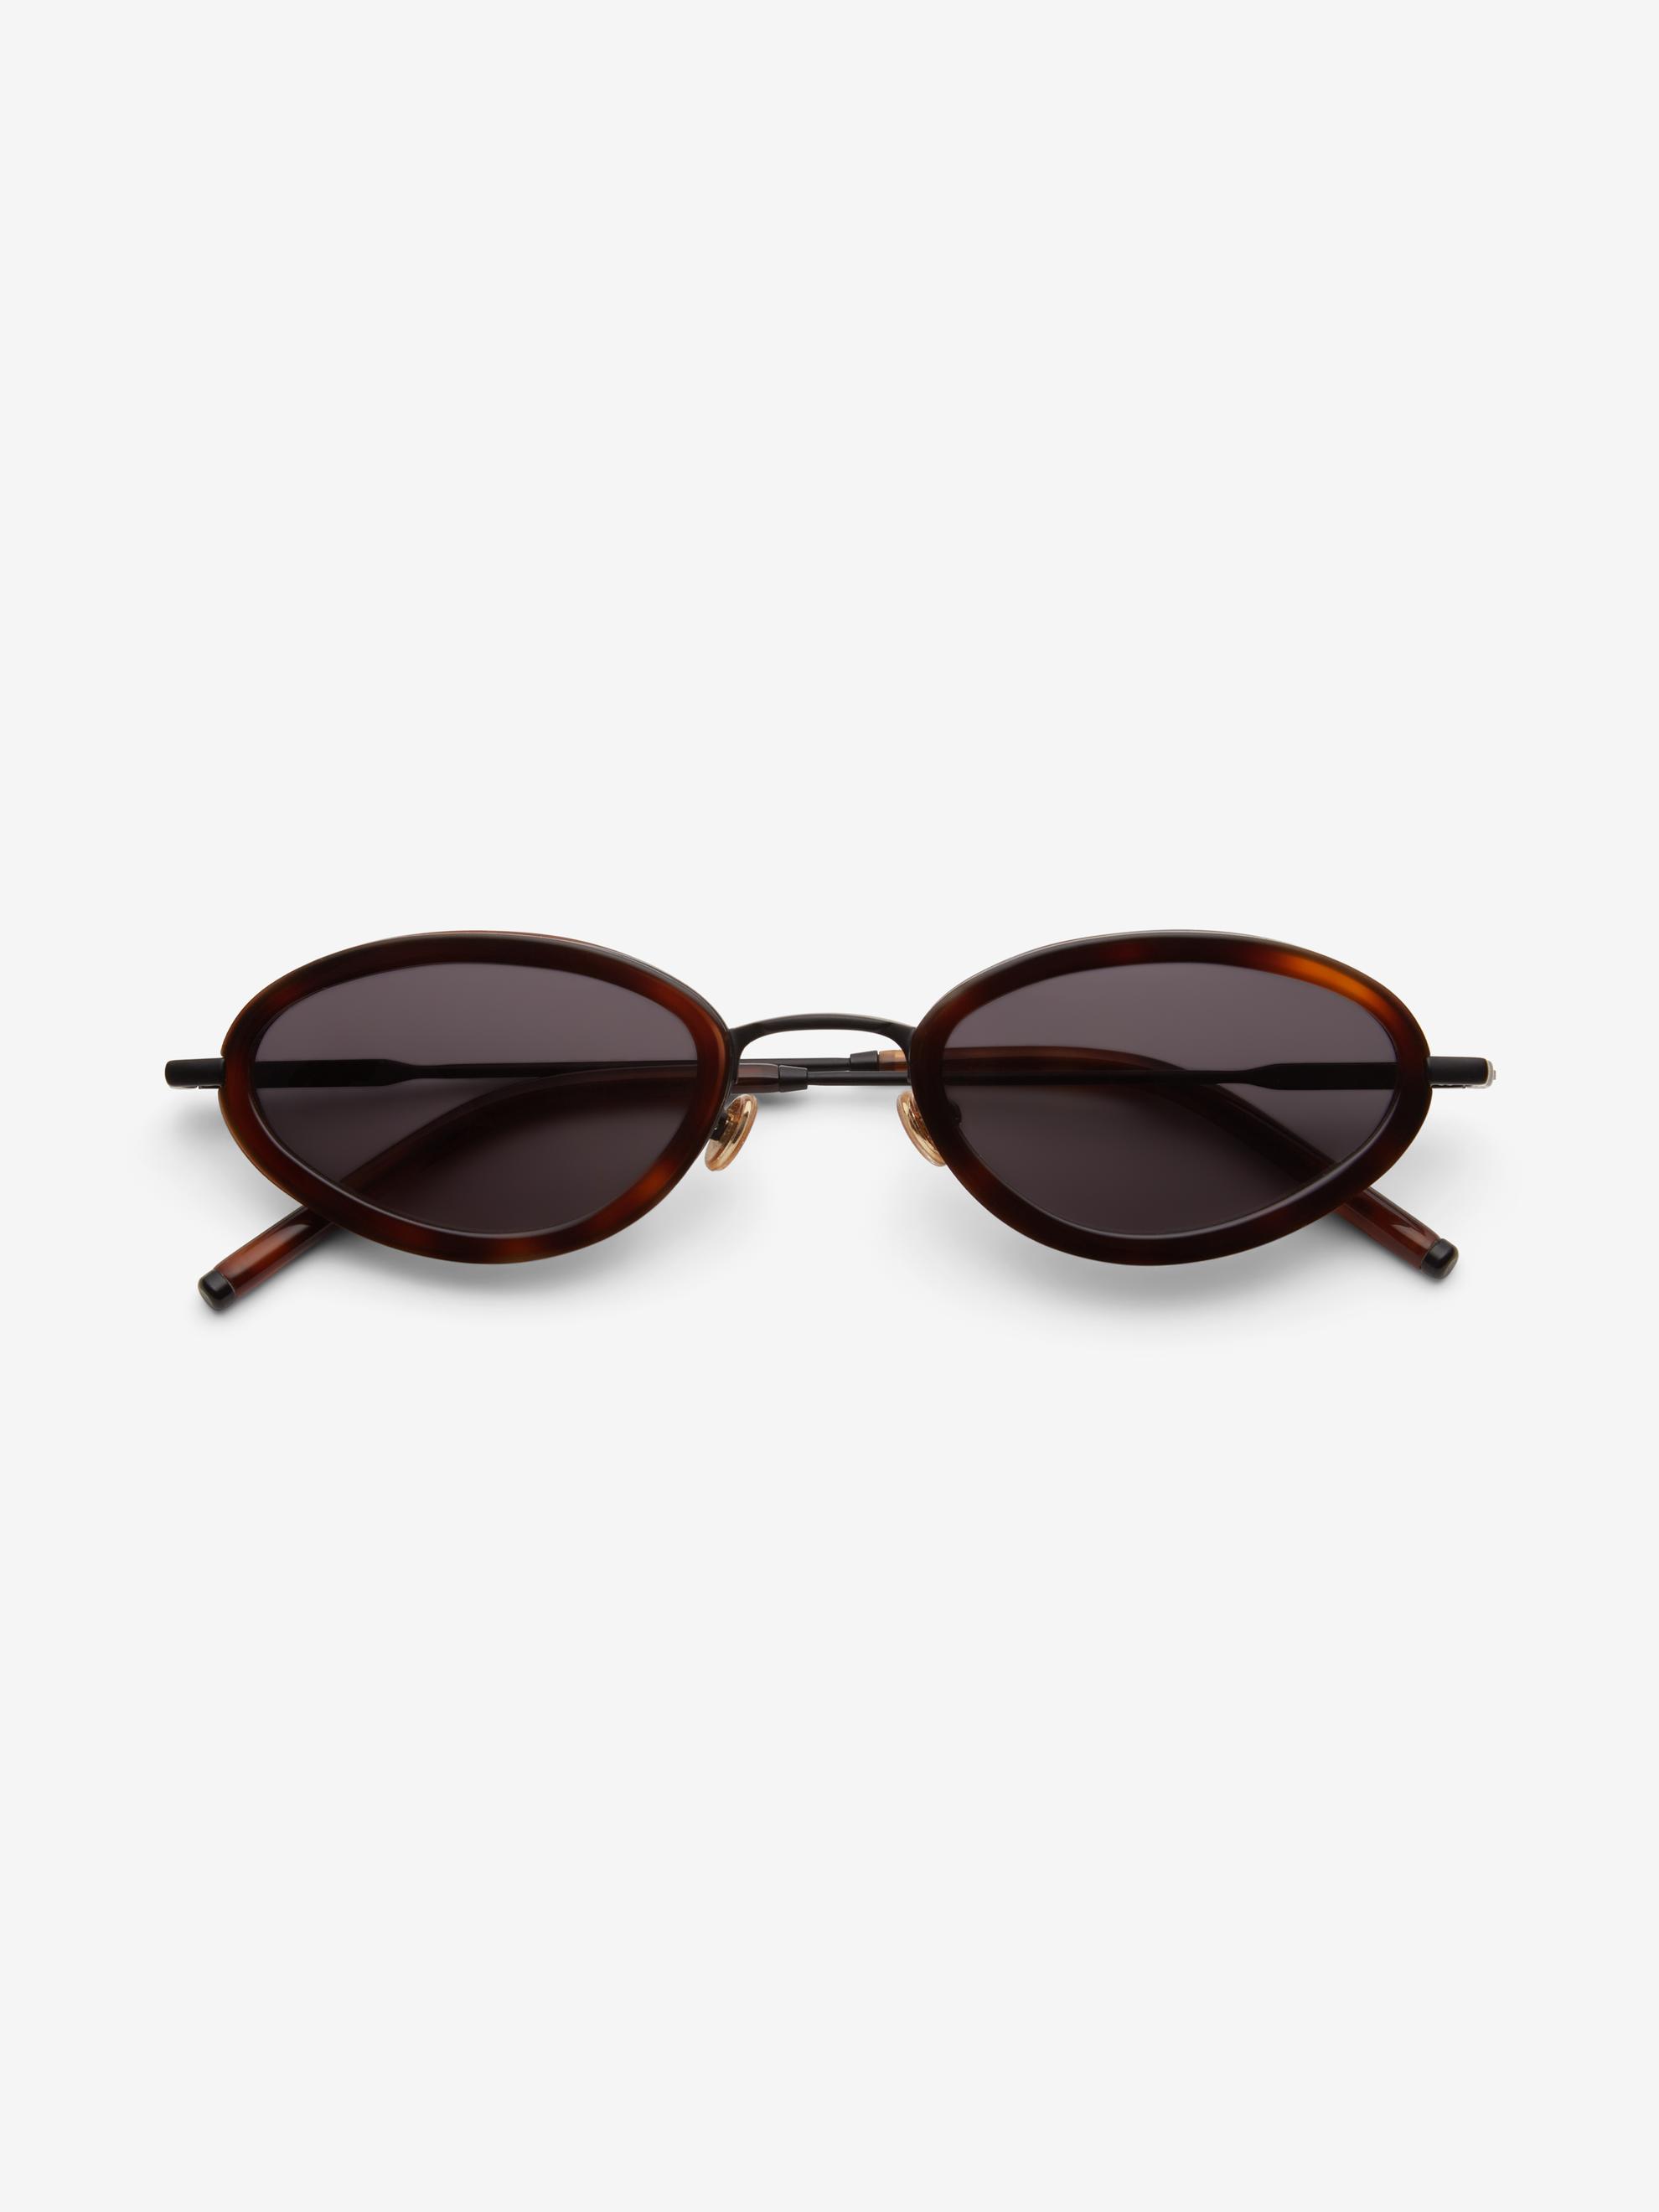 Oval sunglasses för 1800 kr på Dagmar